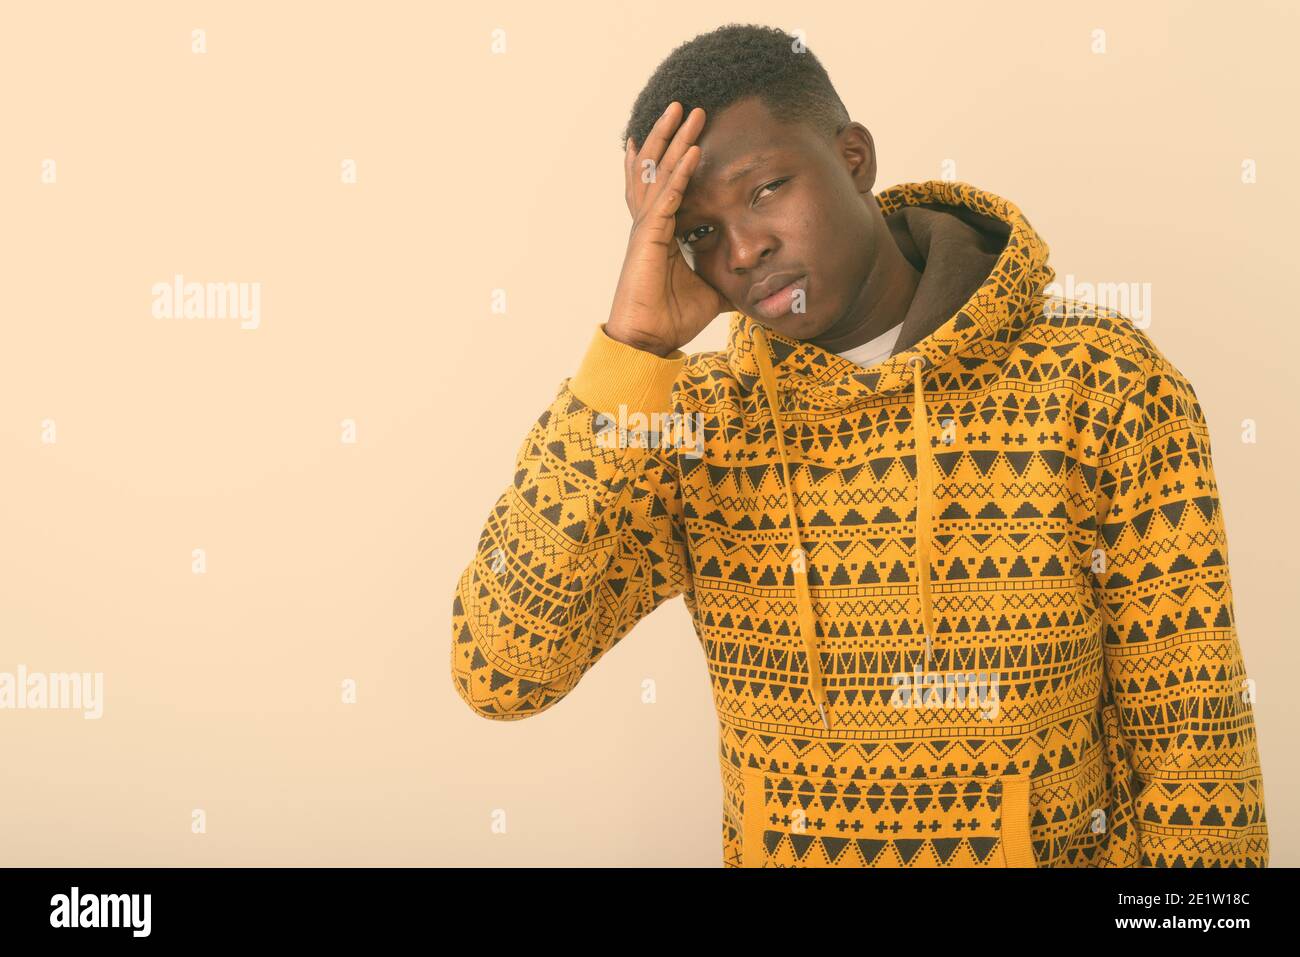 Portrait de jeune homme noir africain ayant des maux contre fond blanc Banque D'Images